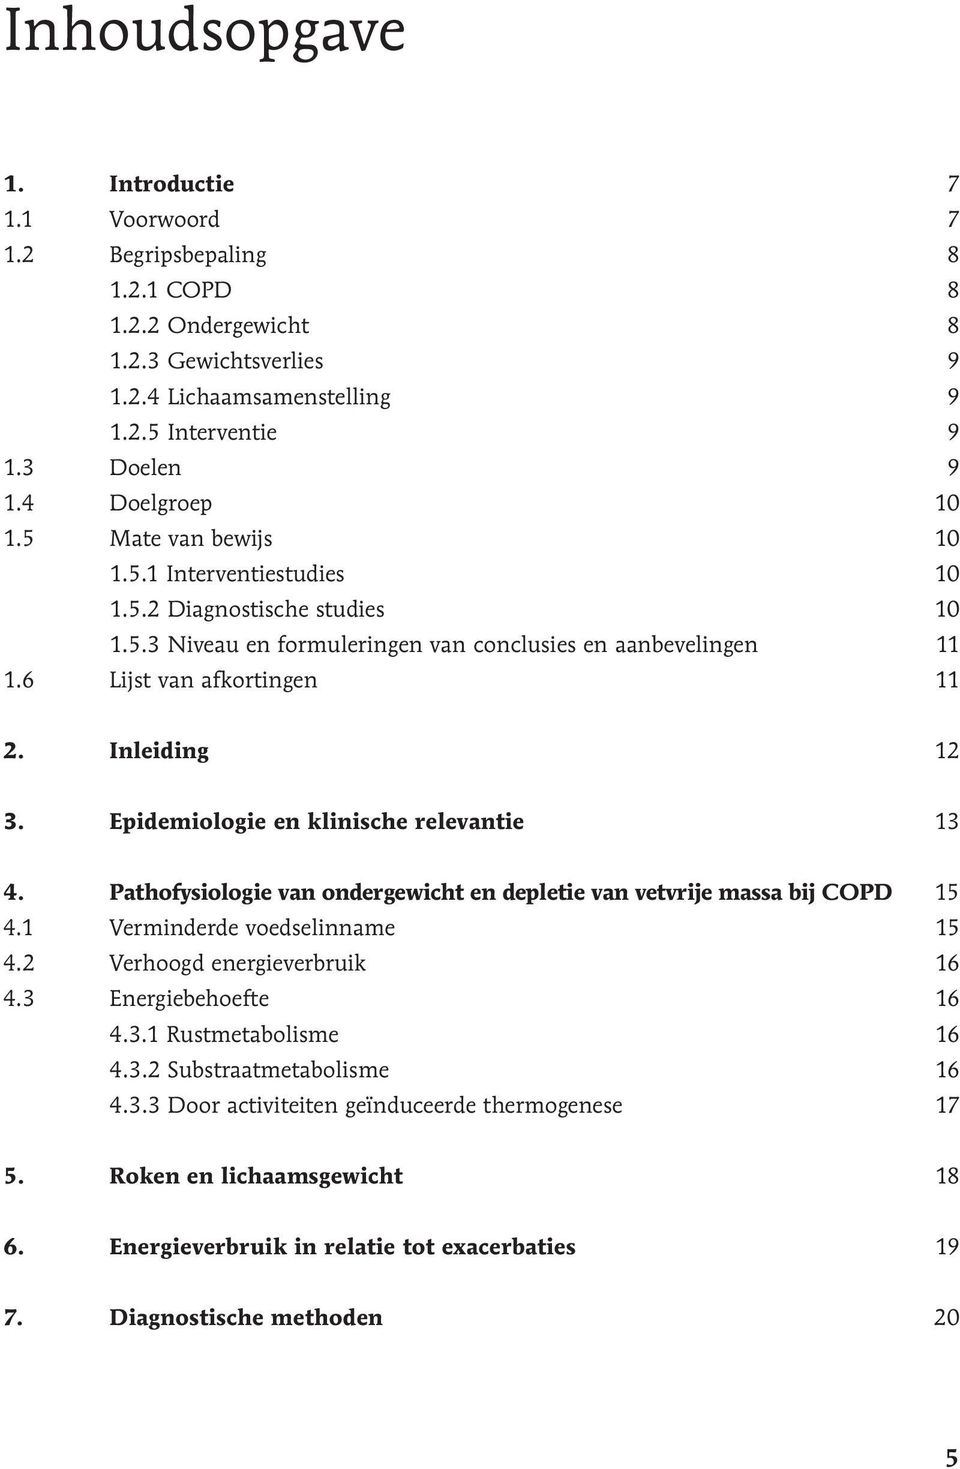 Inleiding 12 3. Epidemiologie en klinische relevantie 13 4. Pathofysiologie van ondergewicht en depletie van vetvrije massa bij COPD 15 4.1 Verminderde voedselinname 15 4.